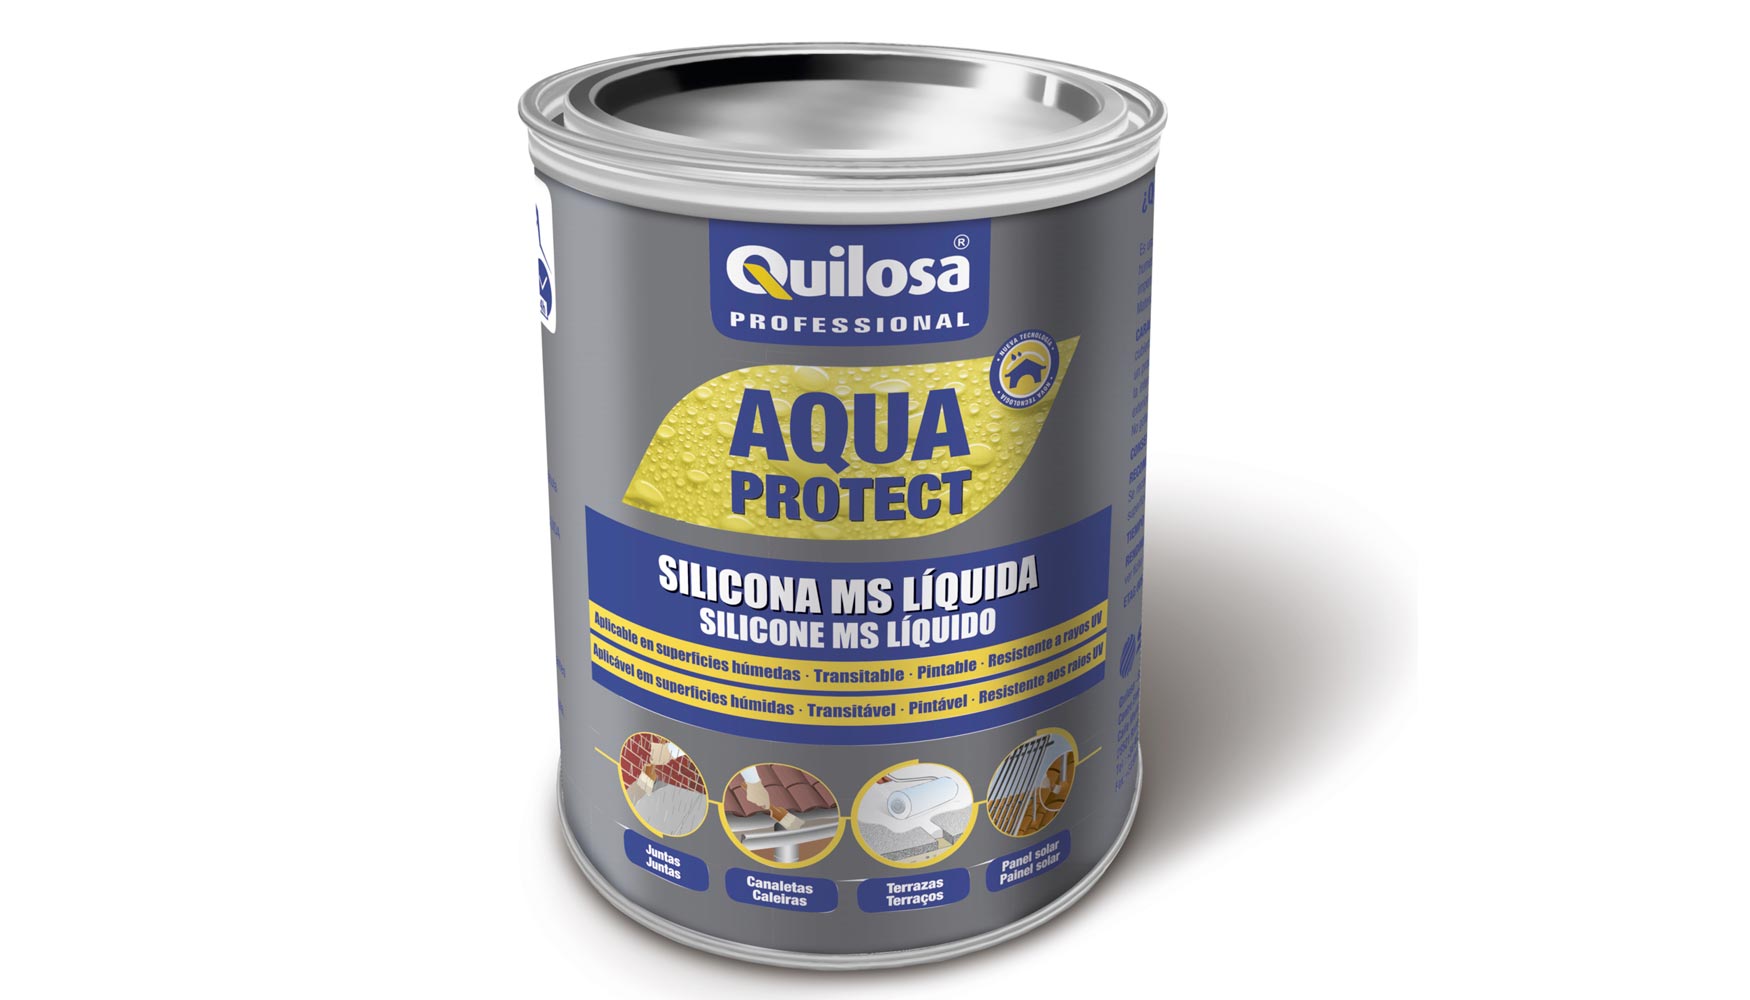 Silicona MS lquida Aquaprotect, de Quilosa